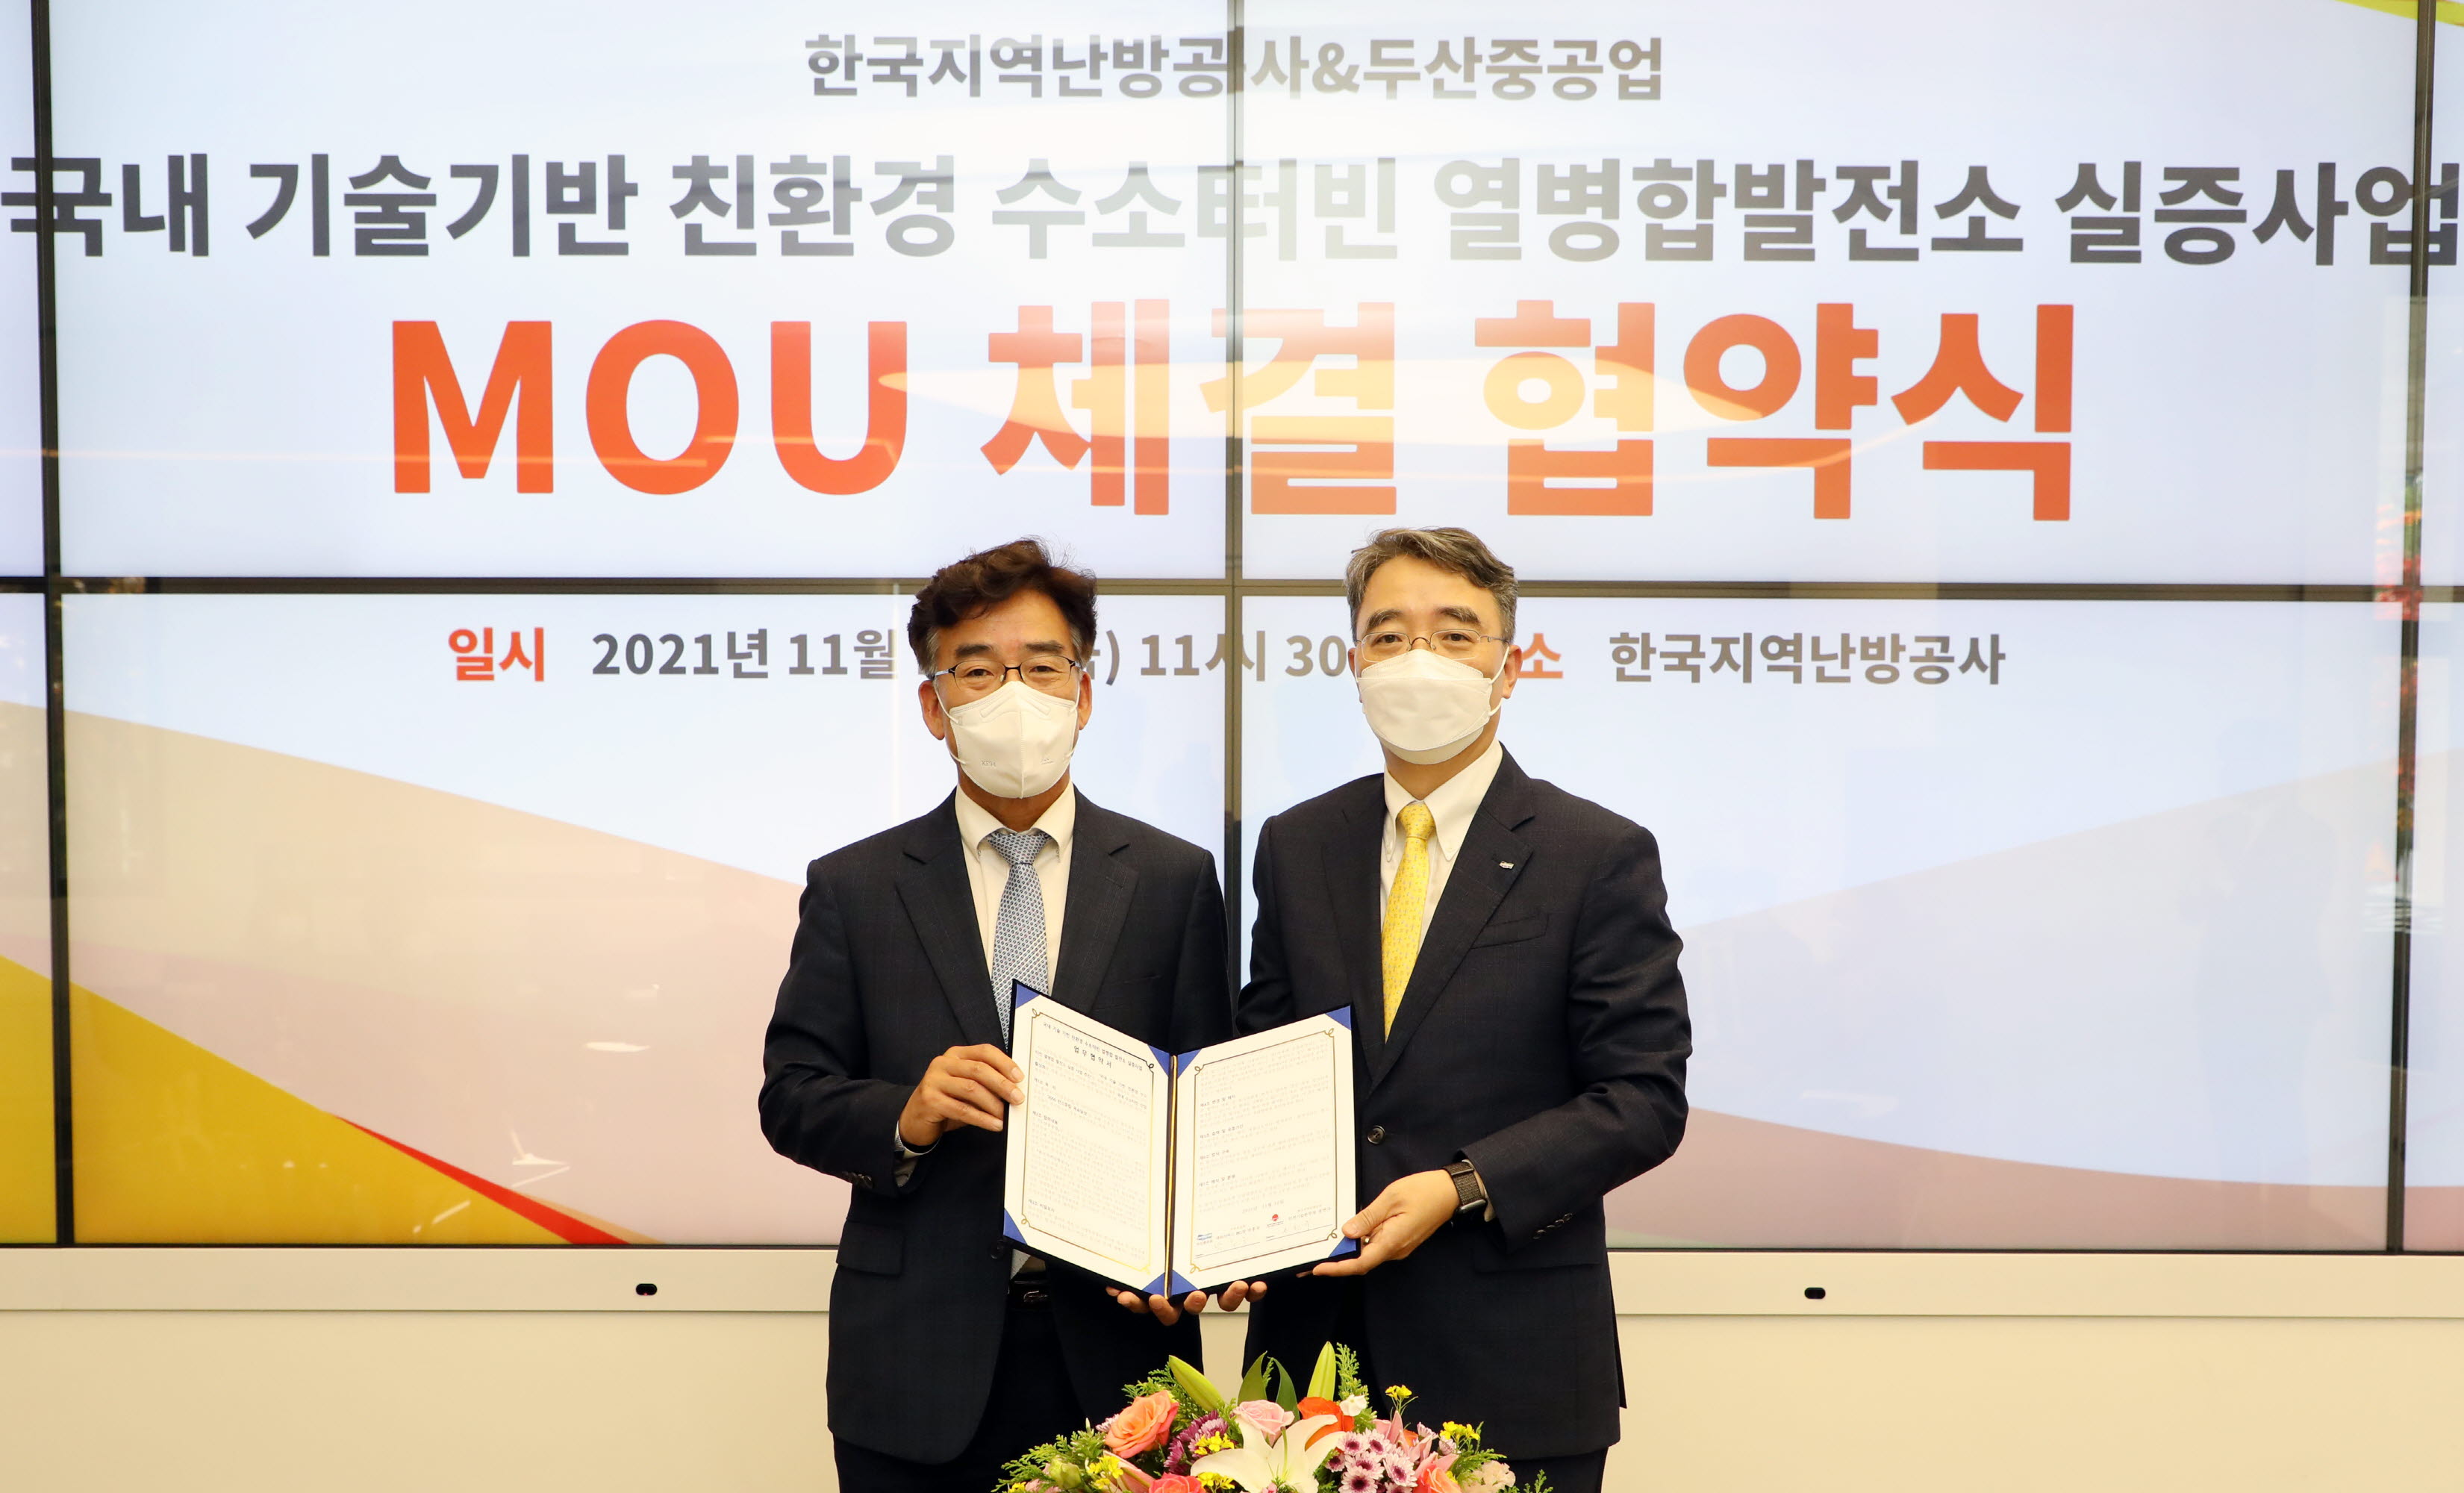 (첨부1) MOU 관련 사진(좌측부터 송현규 한난 안전기술본부장, 박홍욱 두산중공업 파워서비스 BG장)